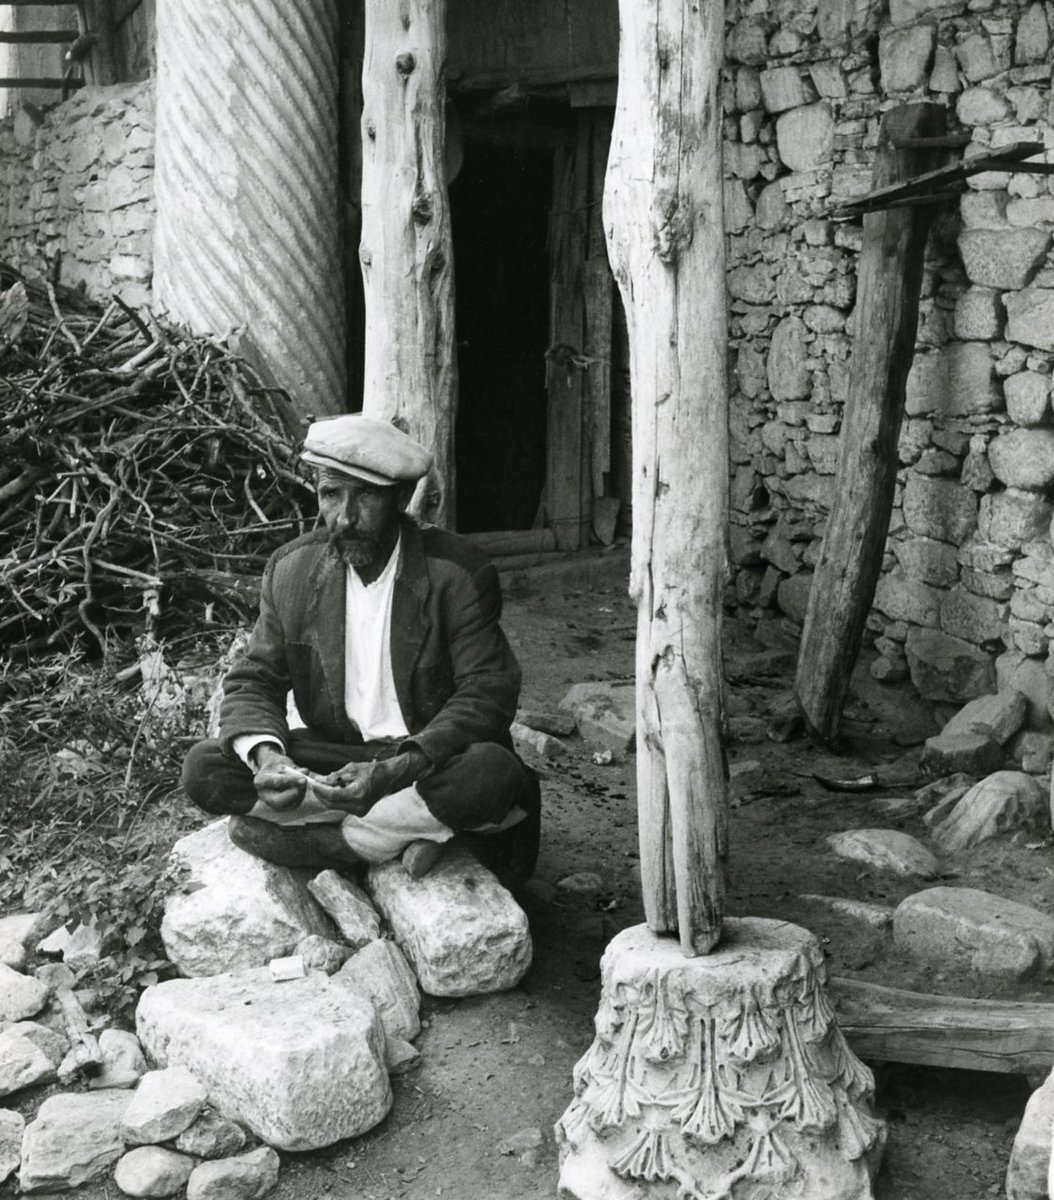 Aphrodisias, Turkey (1962)
Photo by Paolo Monti